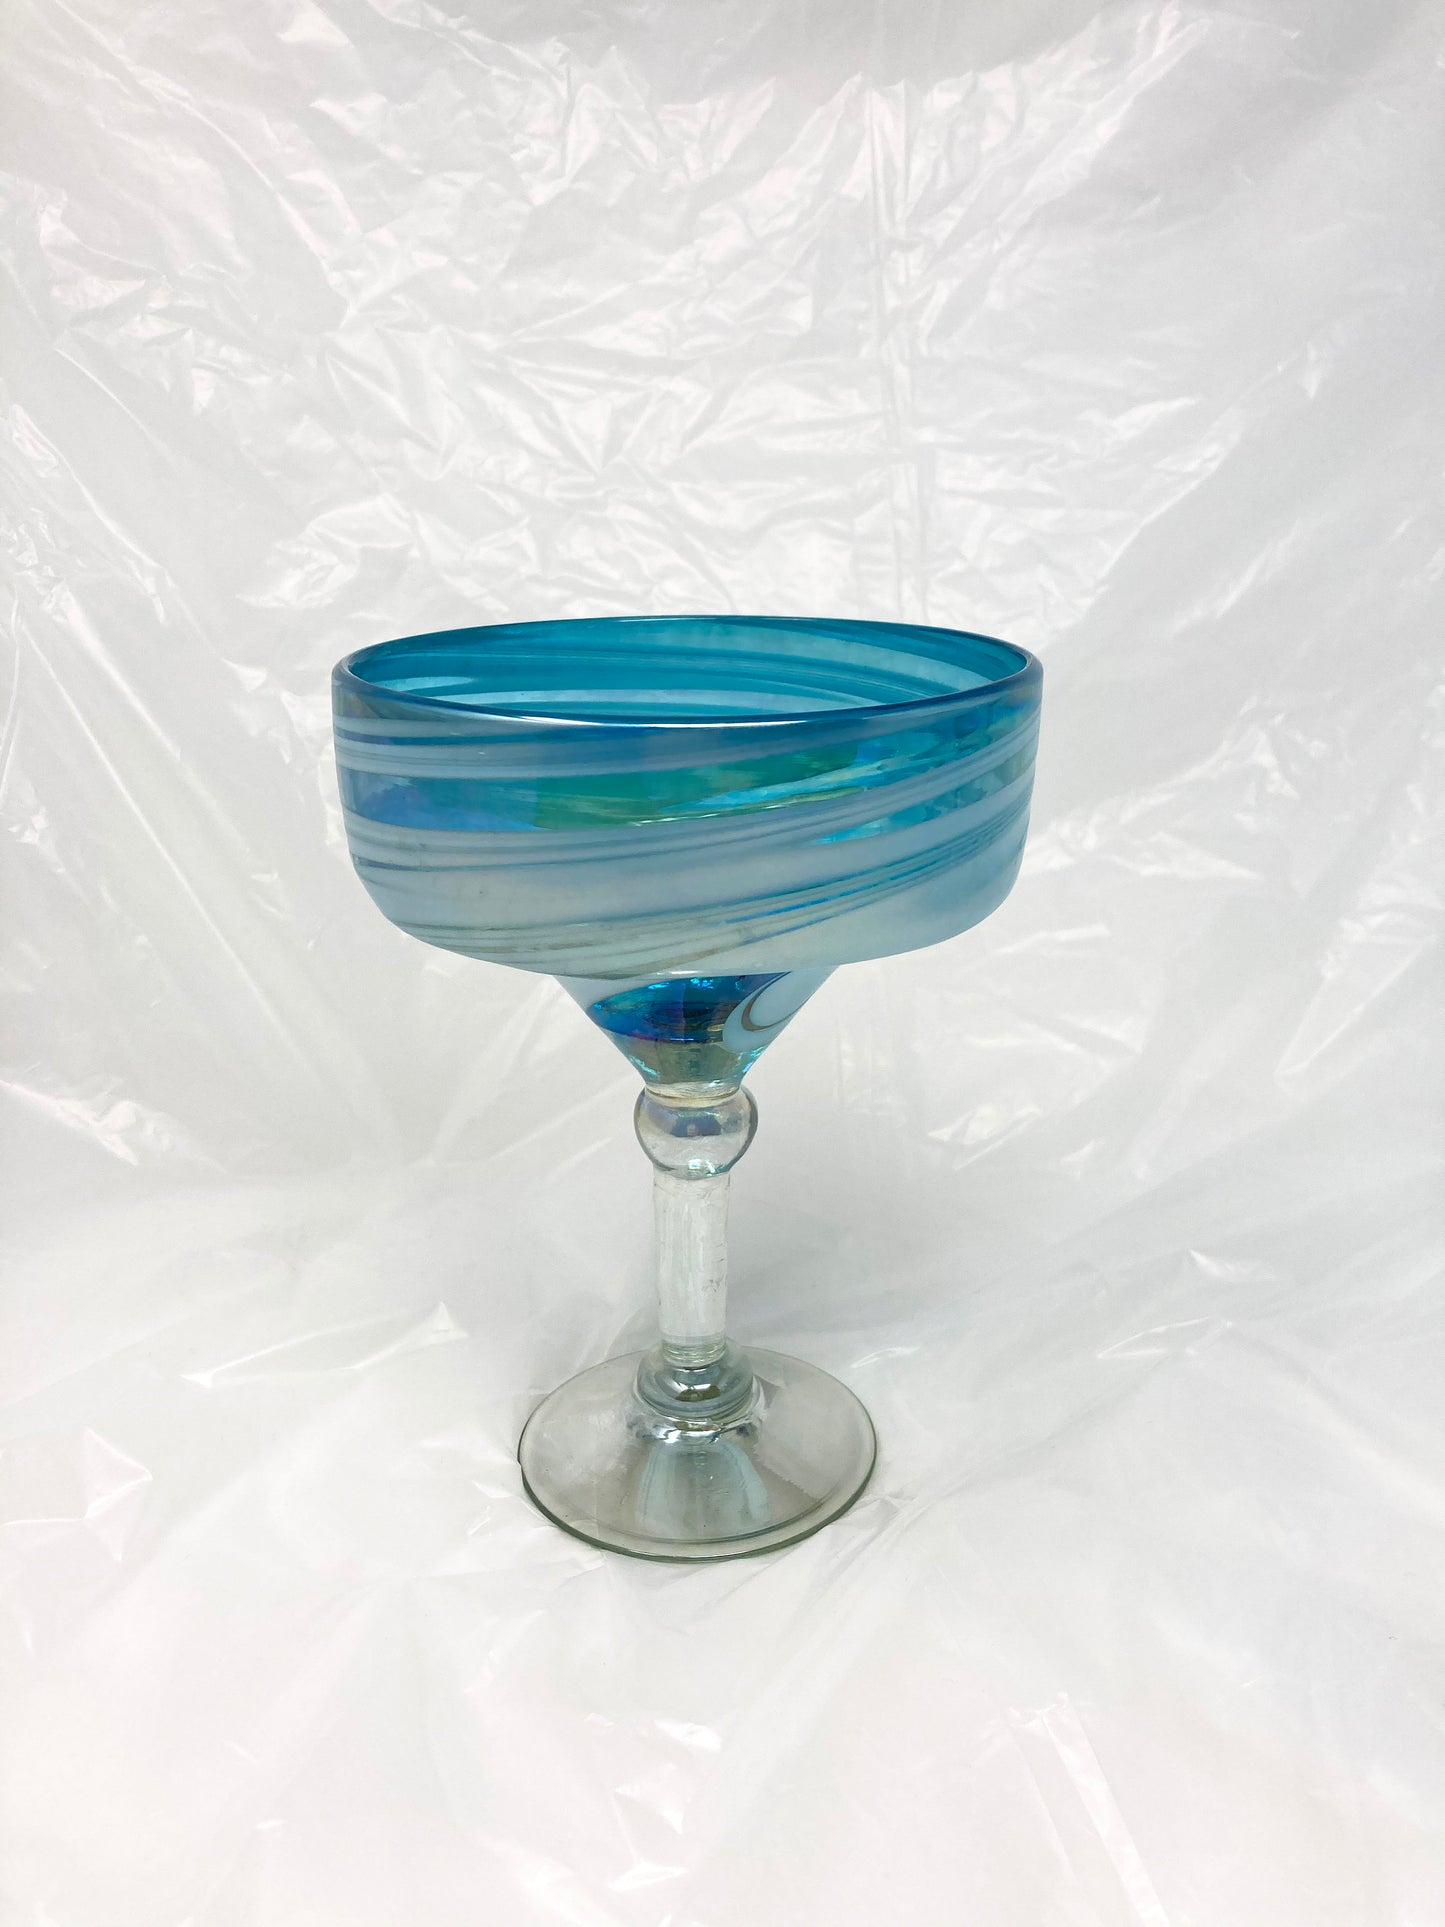 Hand Blown Margarita Glass - Turquoise/White Swirl Iridescent